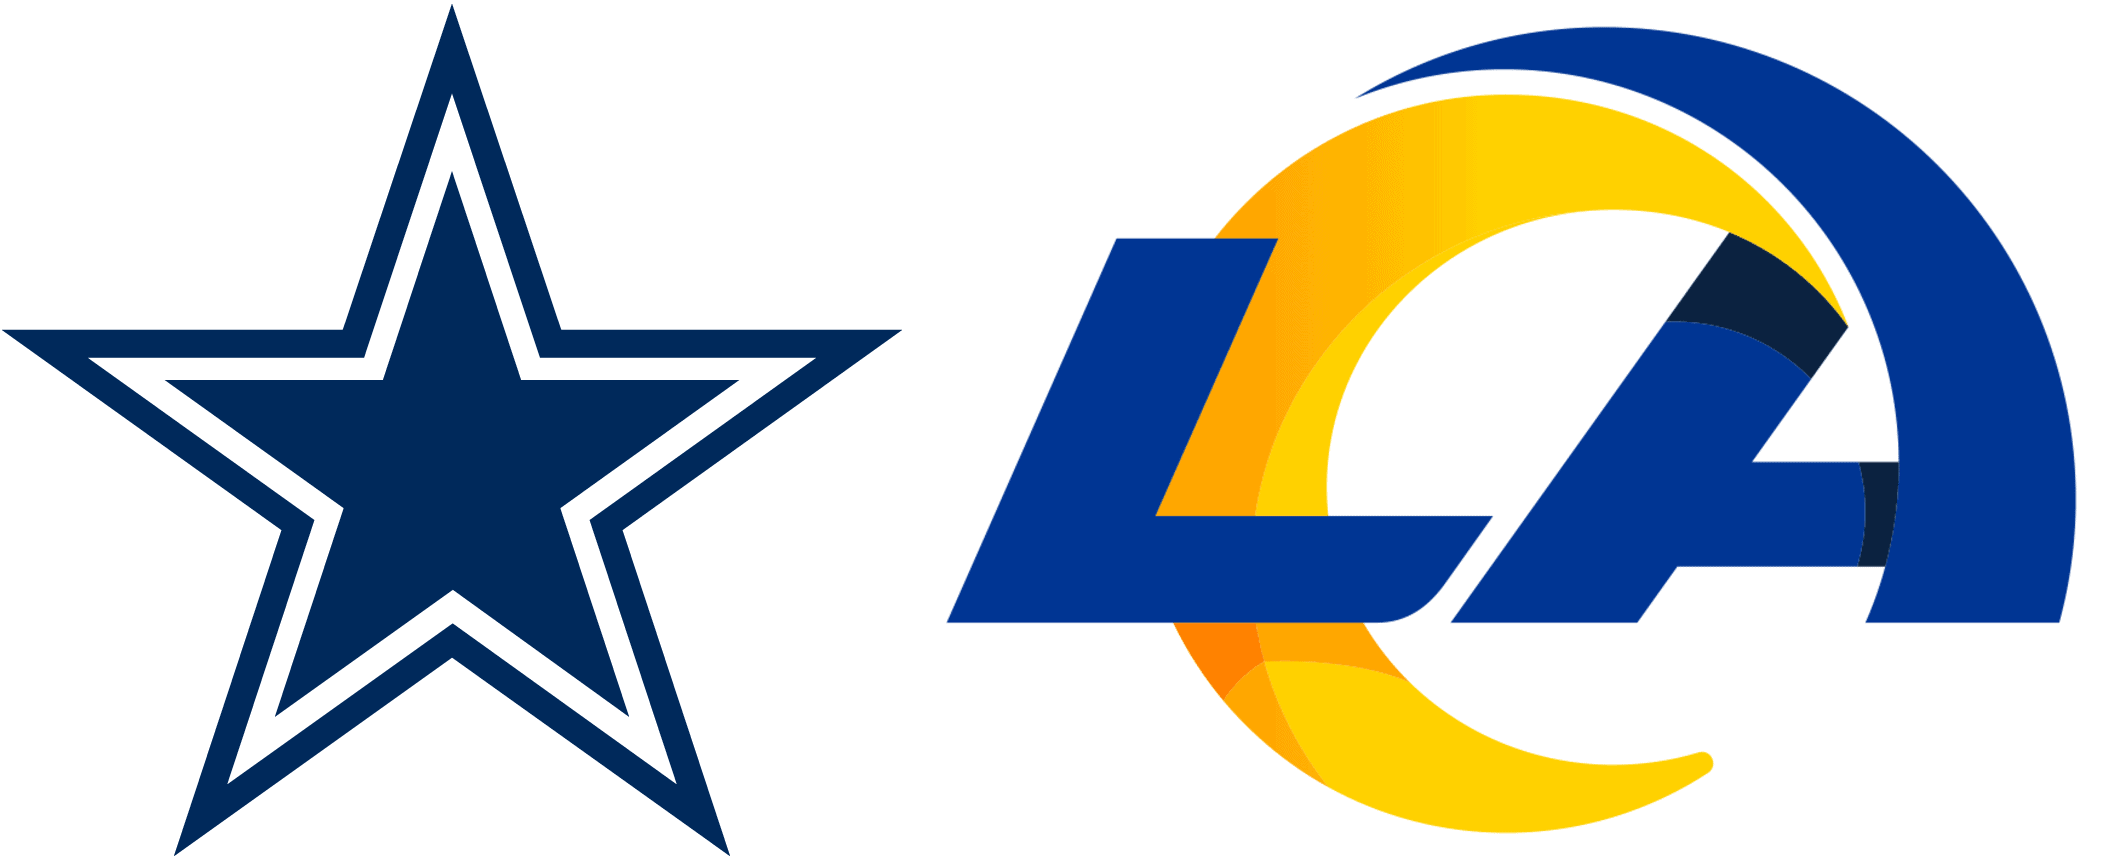 Dallas Cowboys and Los Angeles Rams logos